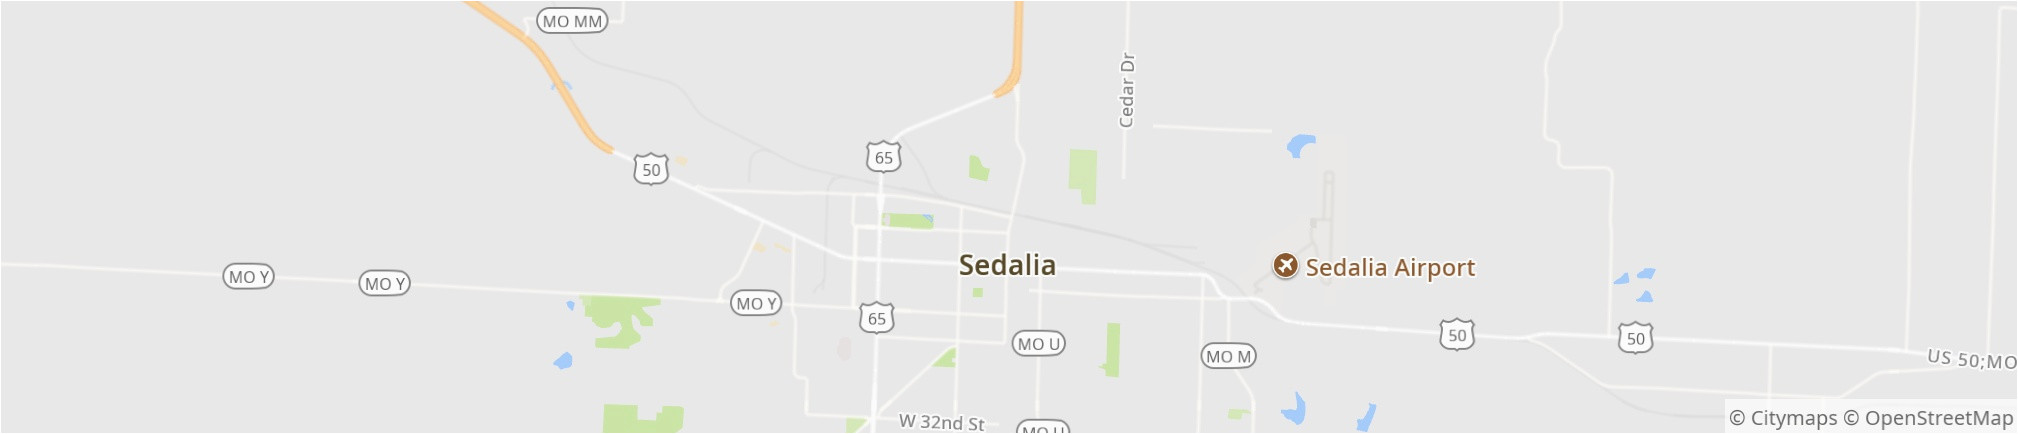 Sedalia Colorado Map Sedalia 2019 Best Of Sedalia Mo tourism Tripadvisor